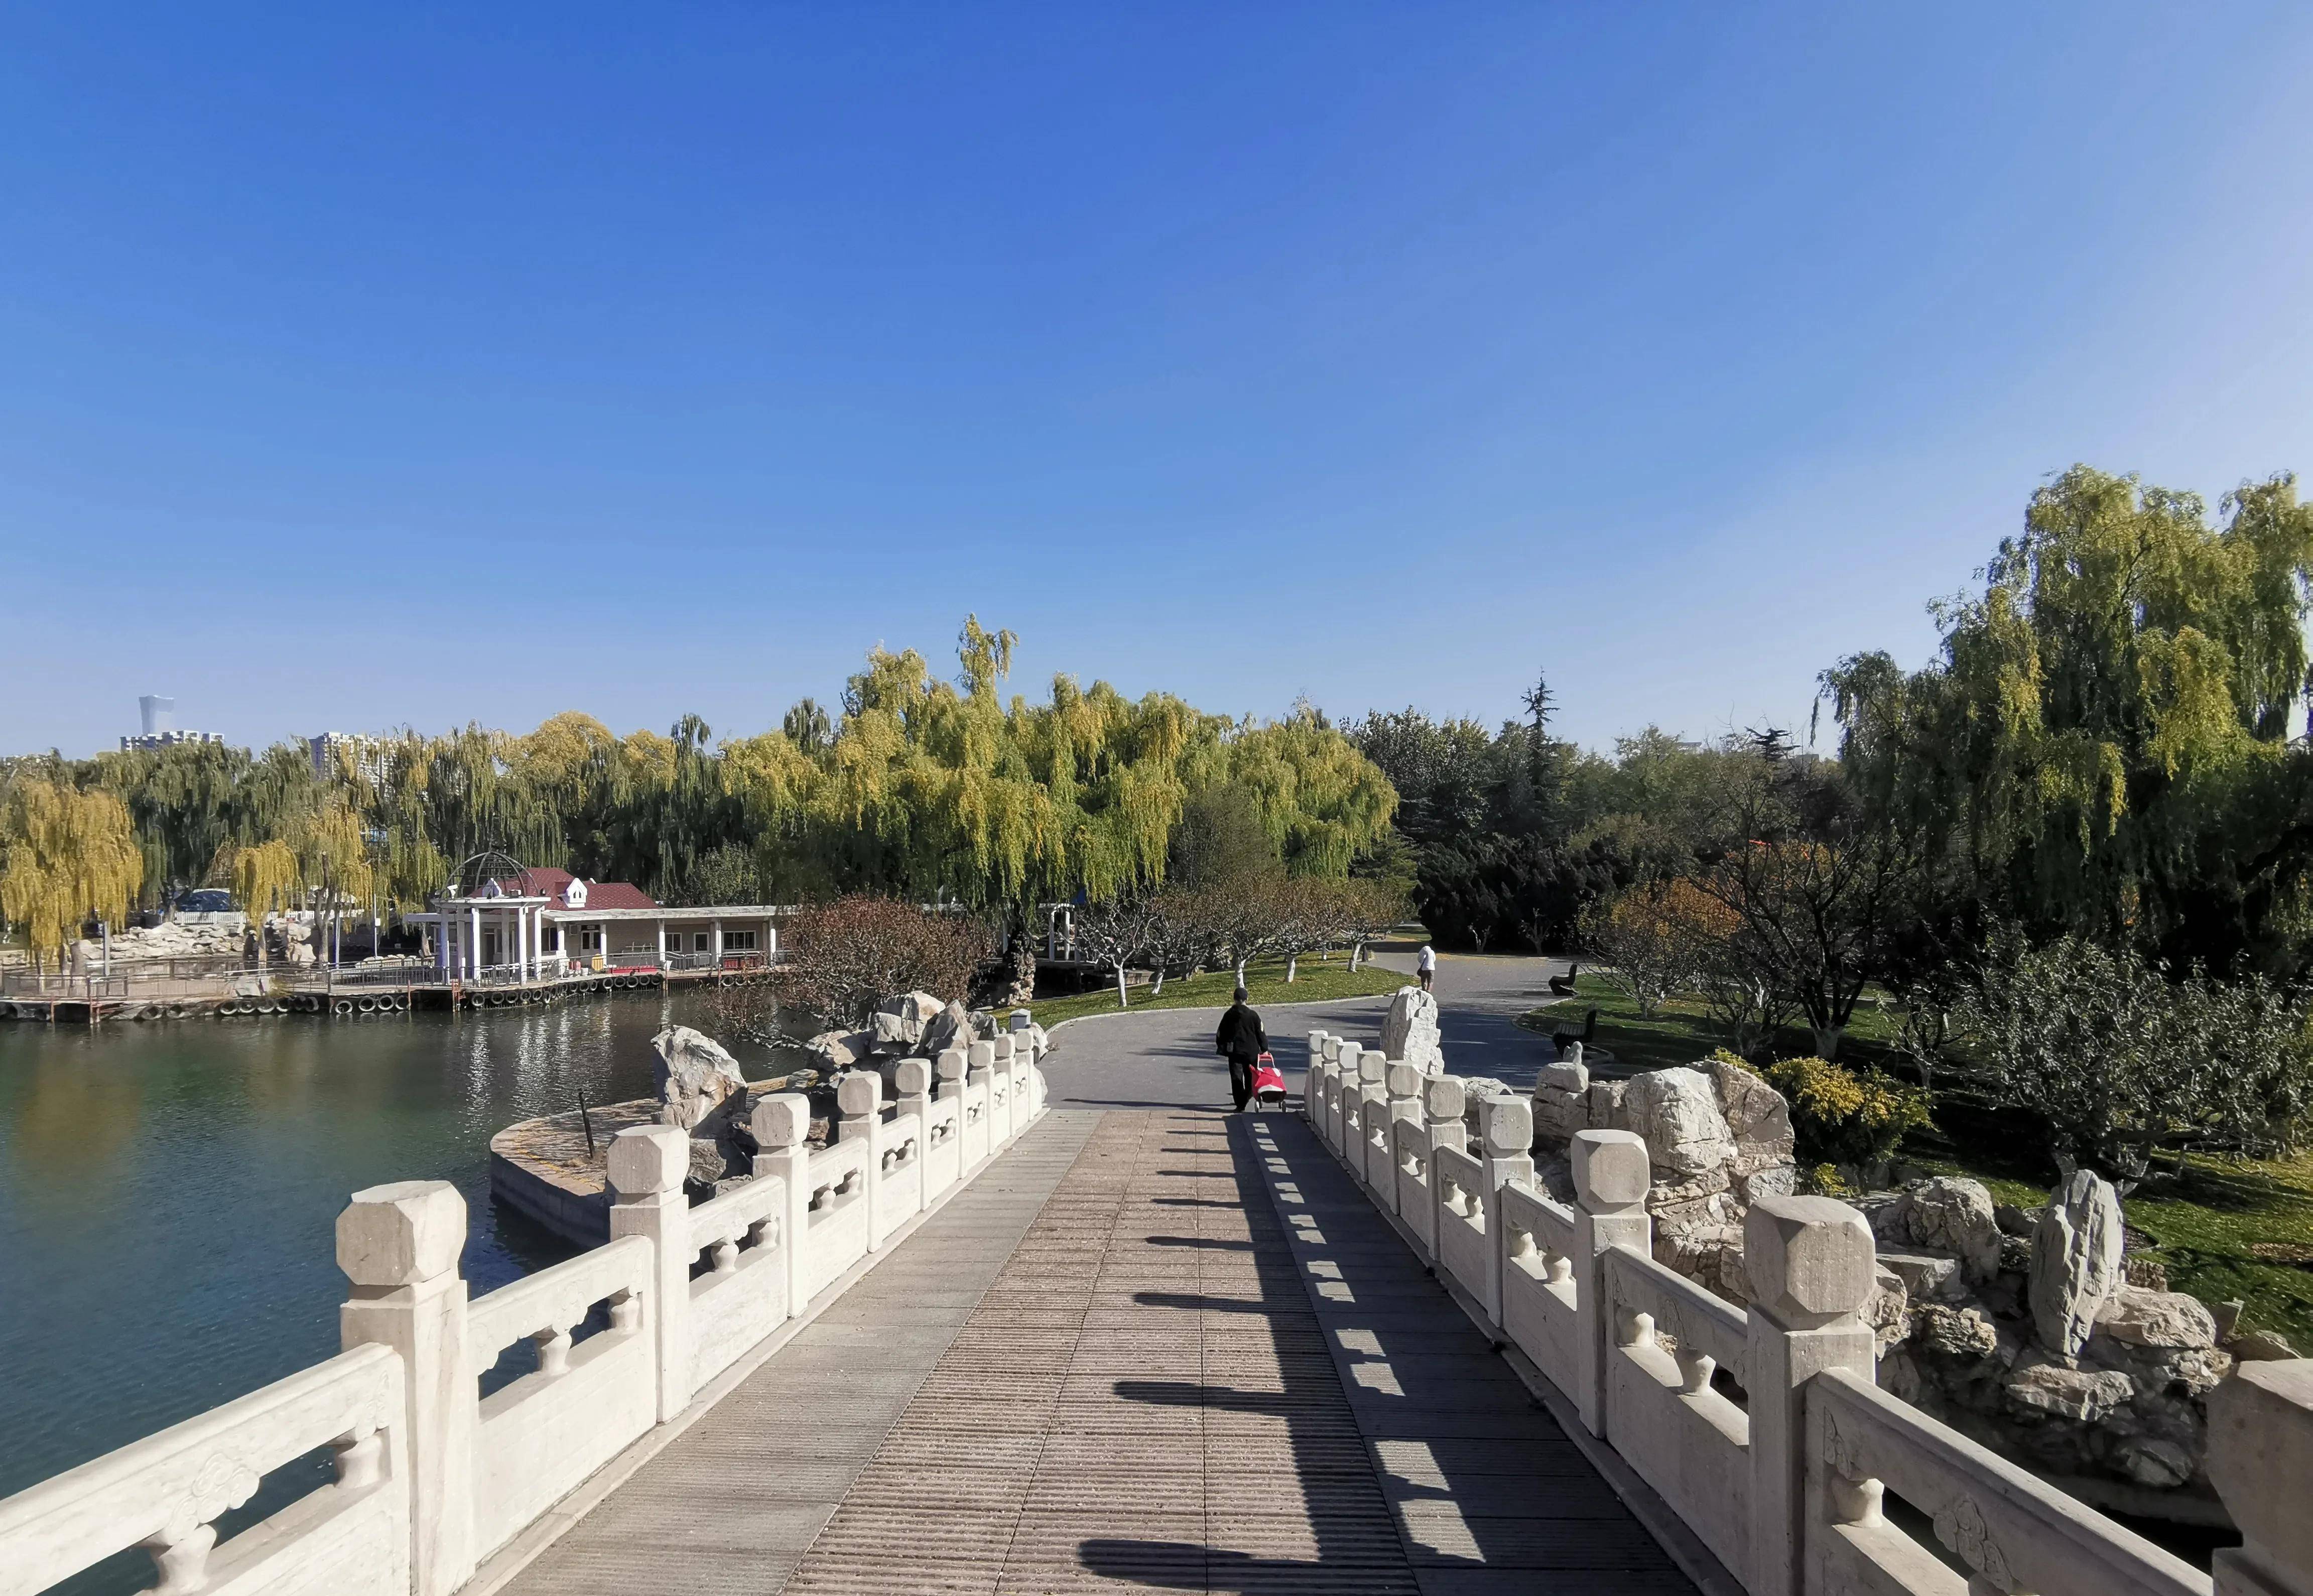 进入了冬季,北京的龙潭湖公园依然是秋色一片